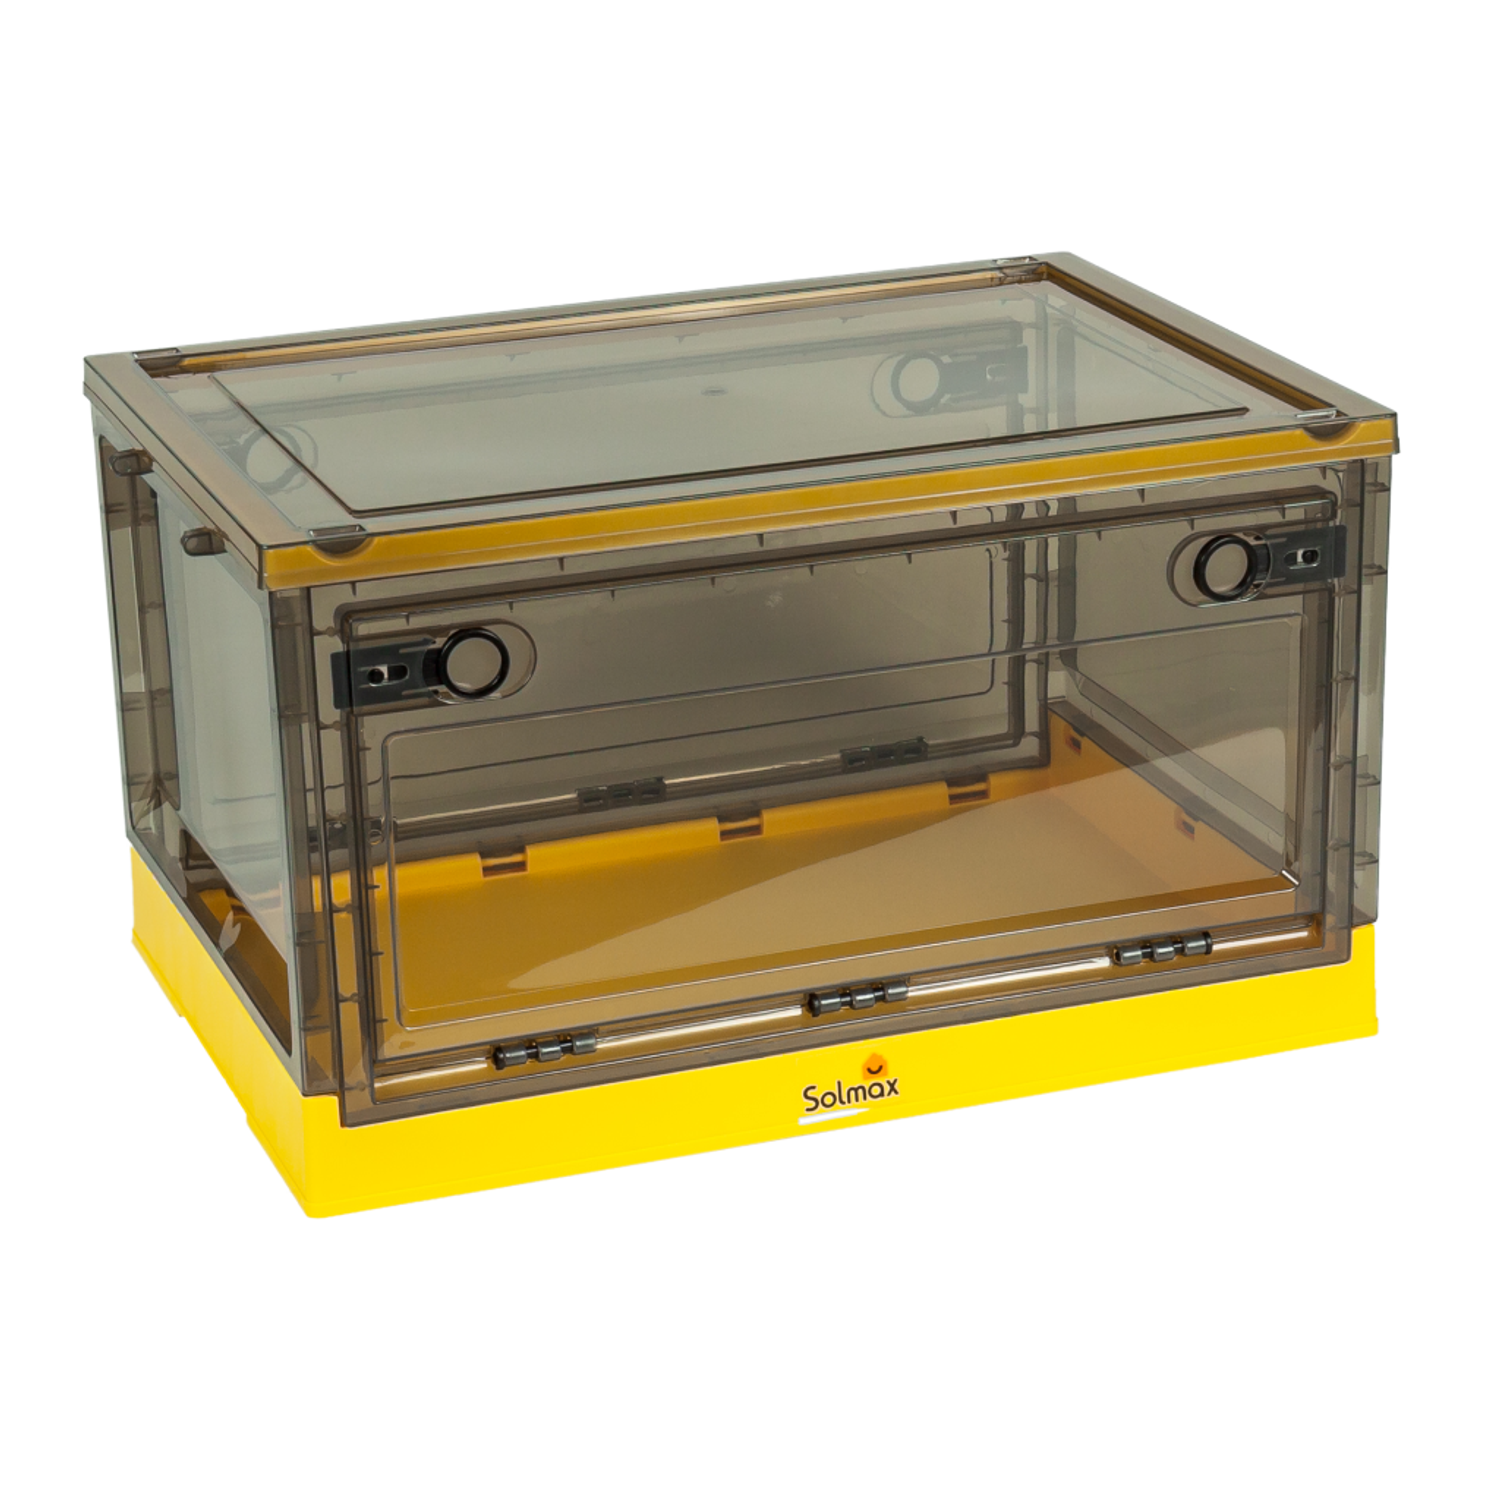 Ящик для хранения вещей Solmax прозрачный контейнер с крышкой на колесах 51х36х30 желтый - фото 5